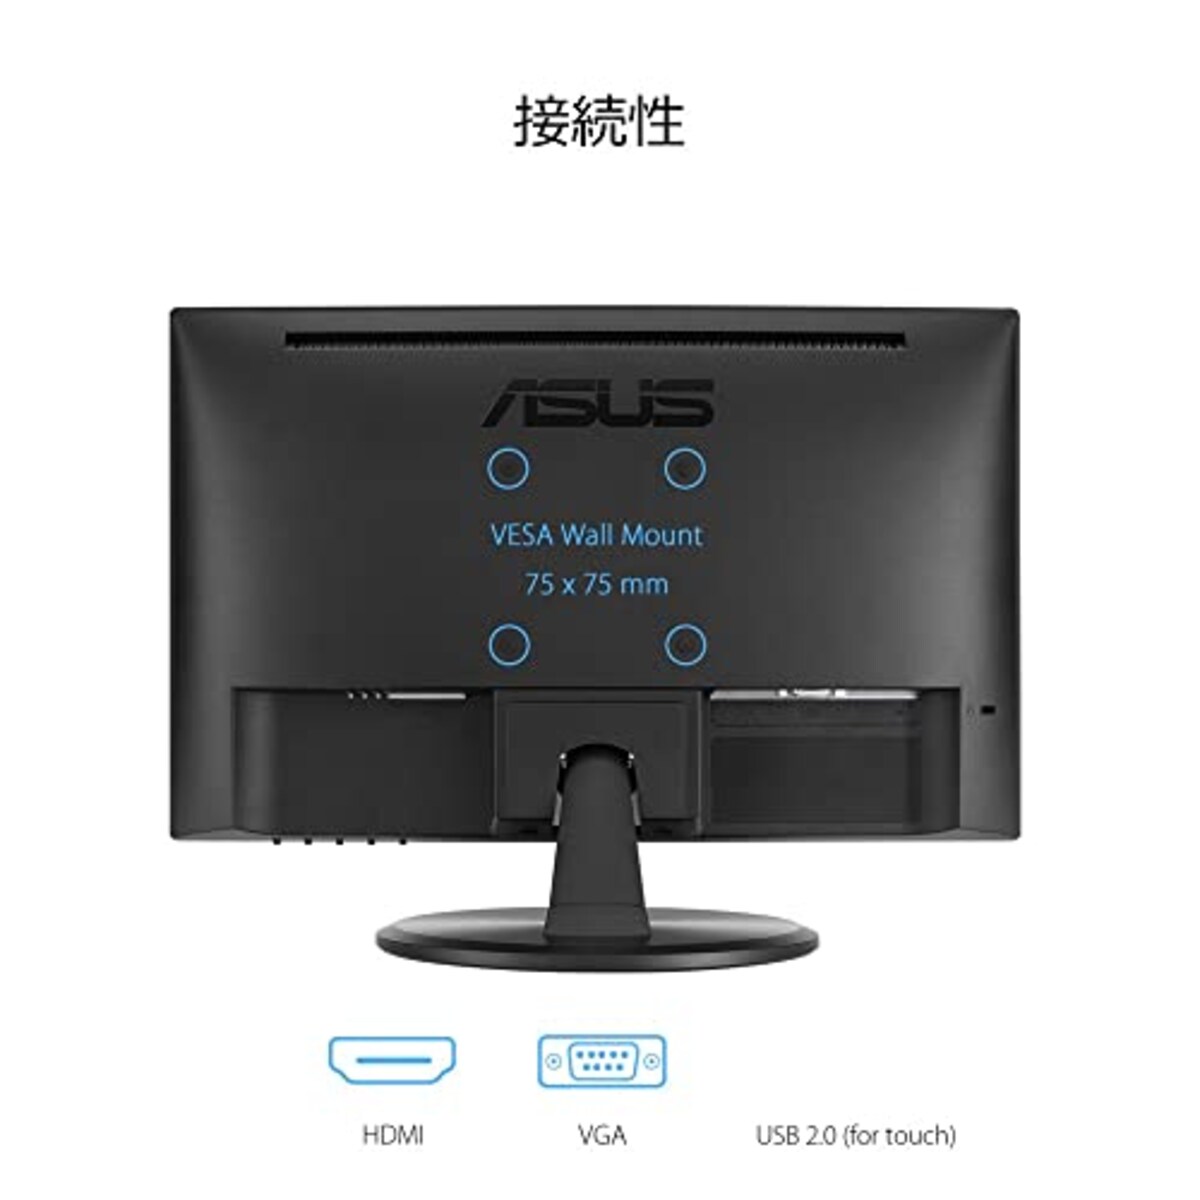  ASUS タッチモニター VT168HR 15.6インチ/10点マルチタッチ/HDMI/フリッカフリー技術/ブルーライト軽減/VESAマウント/国内正規品画像4 